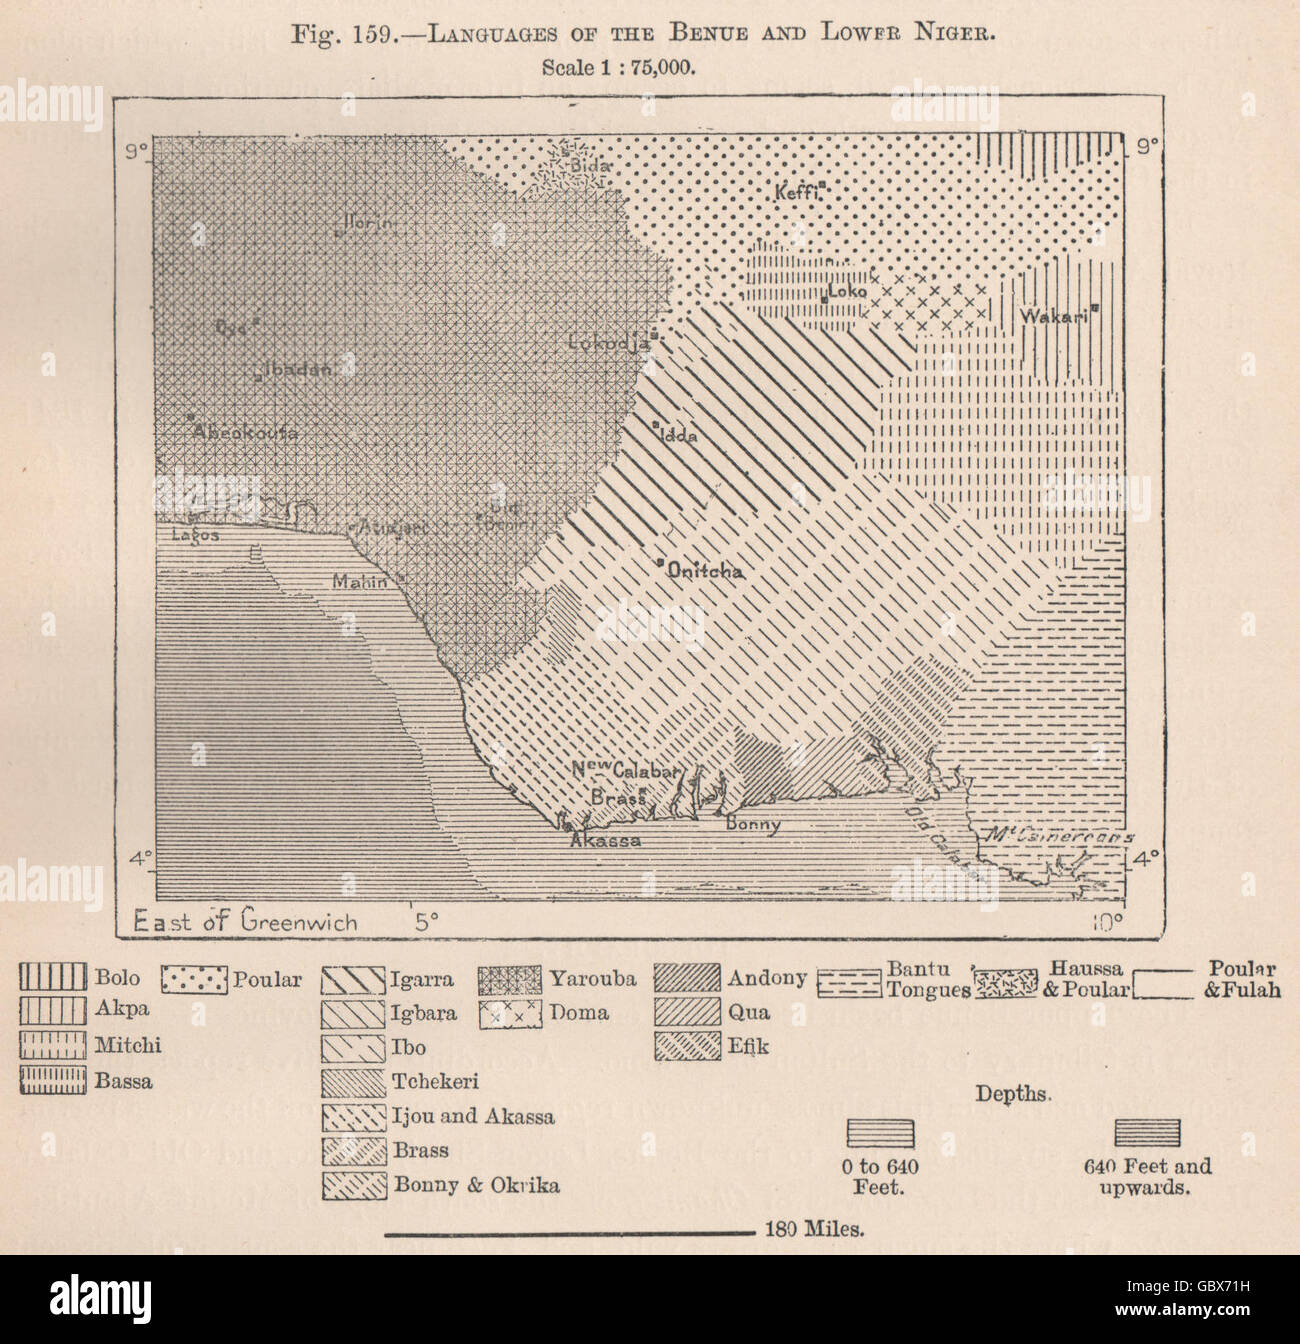 Lingue del Benue e abbassare il Niger. La Nigeria. Il bacino del Niger,  1885 mappa vecchia Foto stock - Alamy